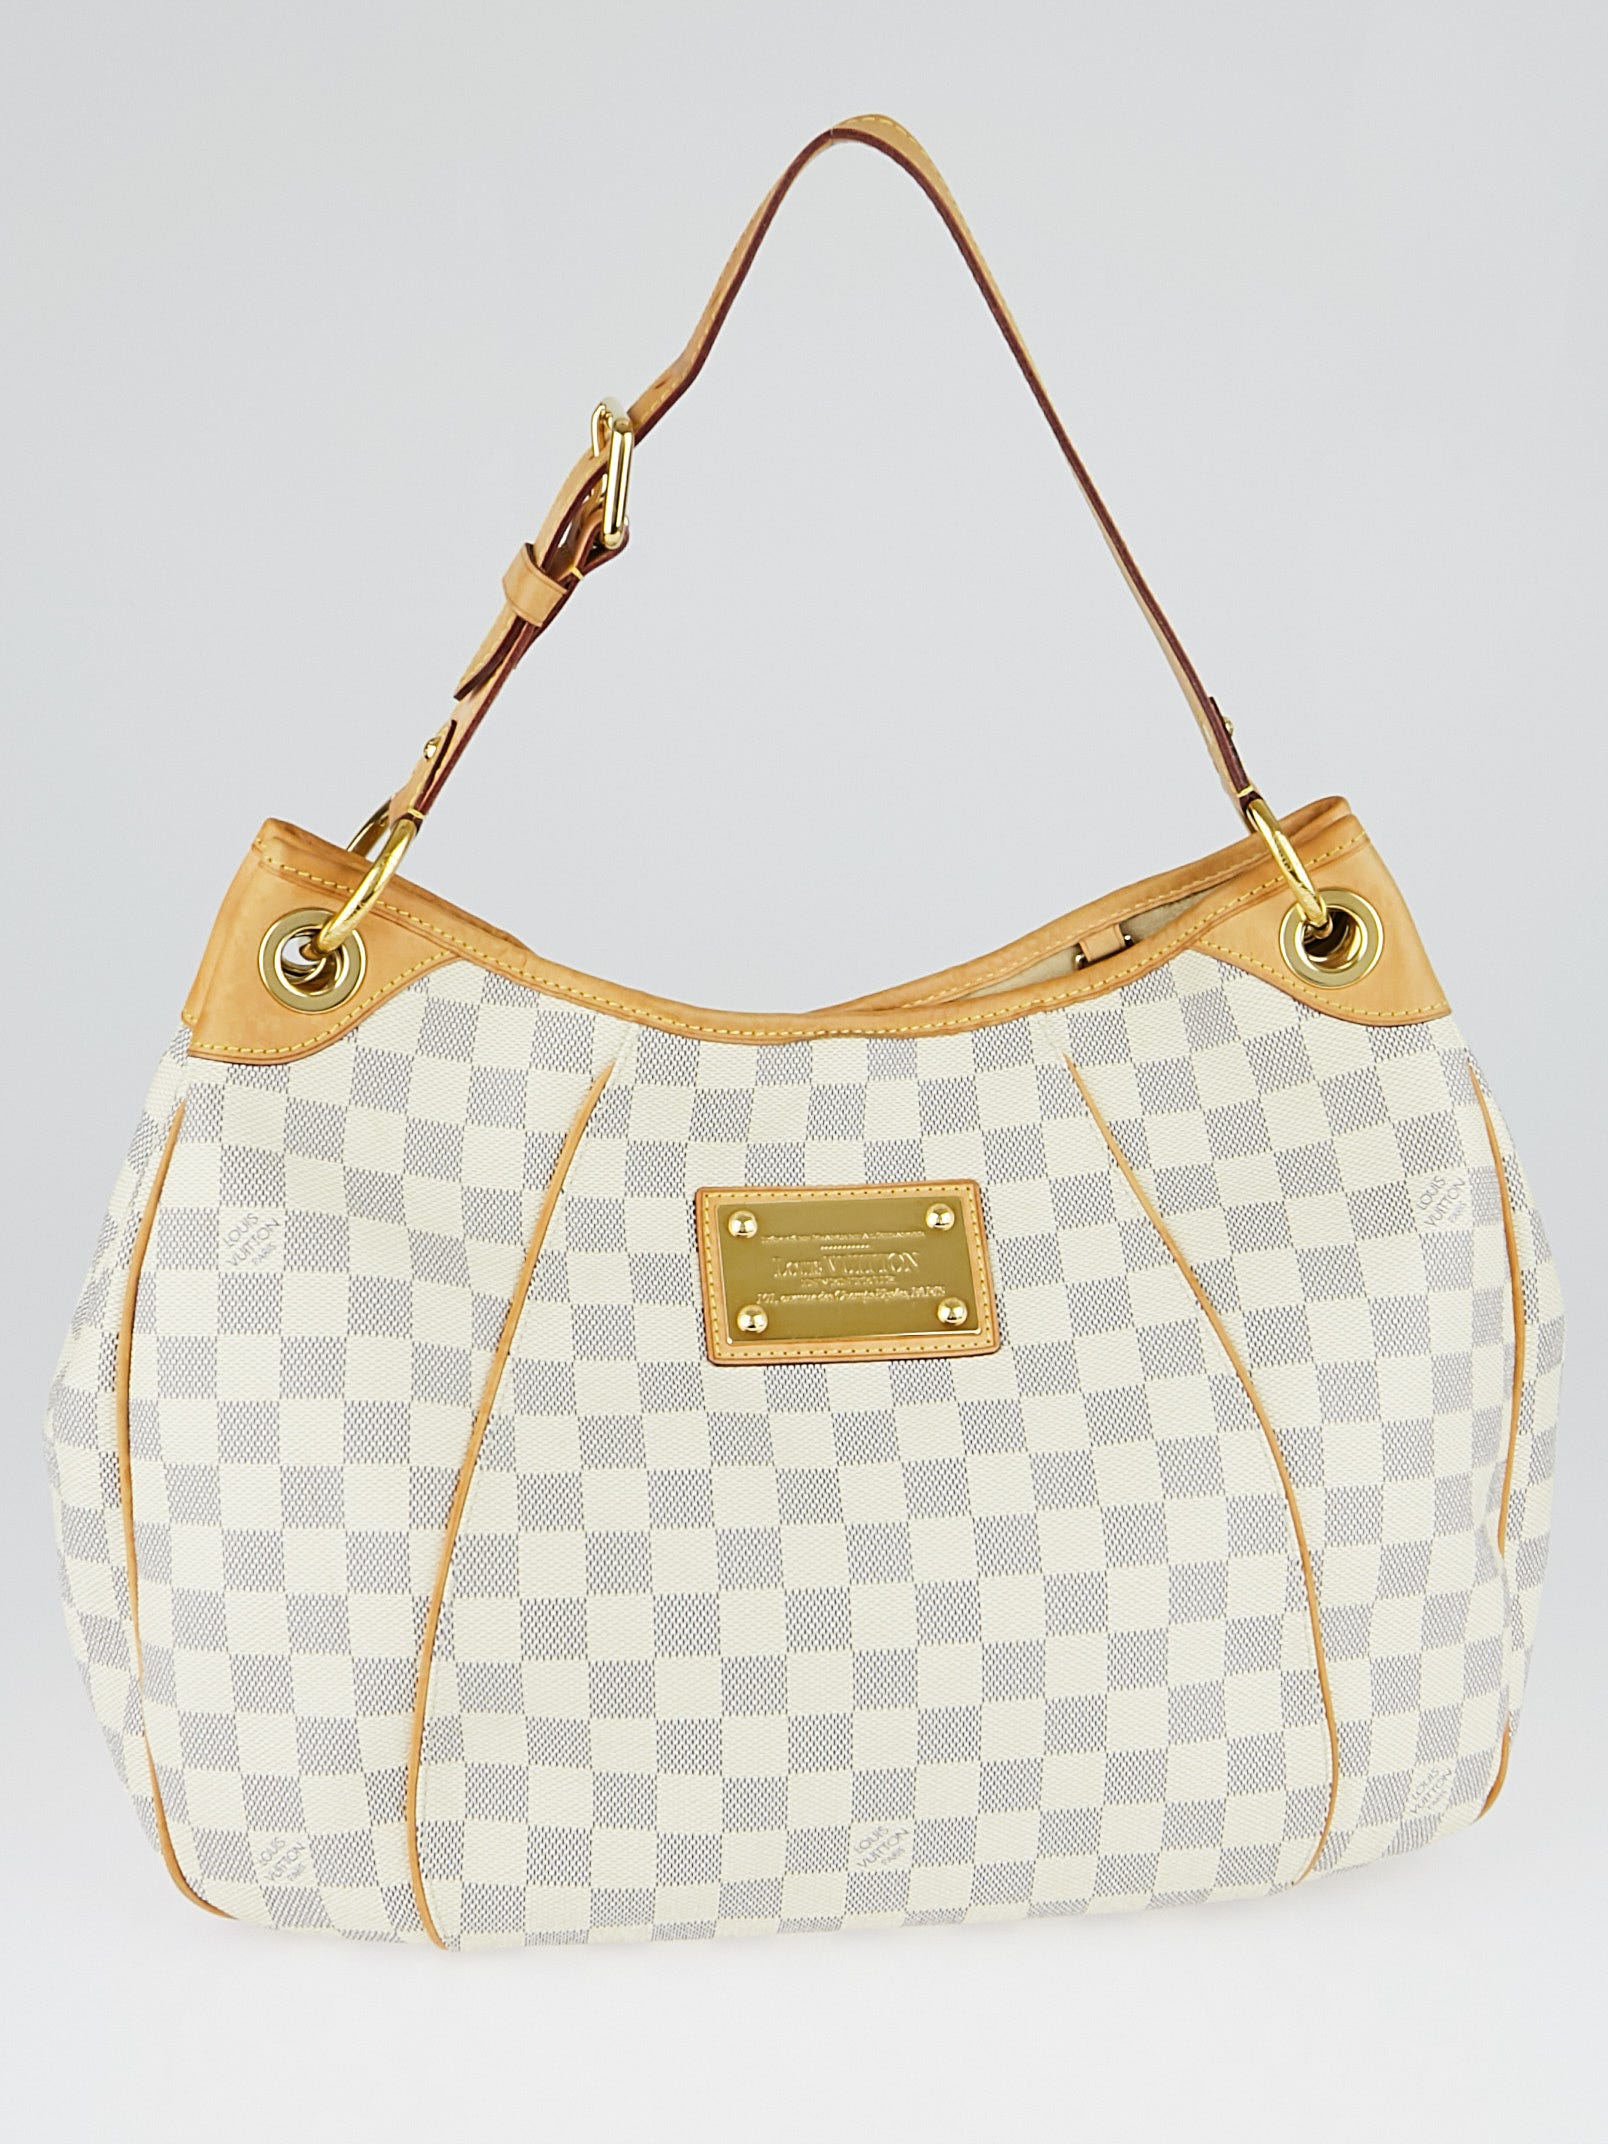 Louis Vuitton Galliera Pm White Damier Azur Canvas Shoulder Bag